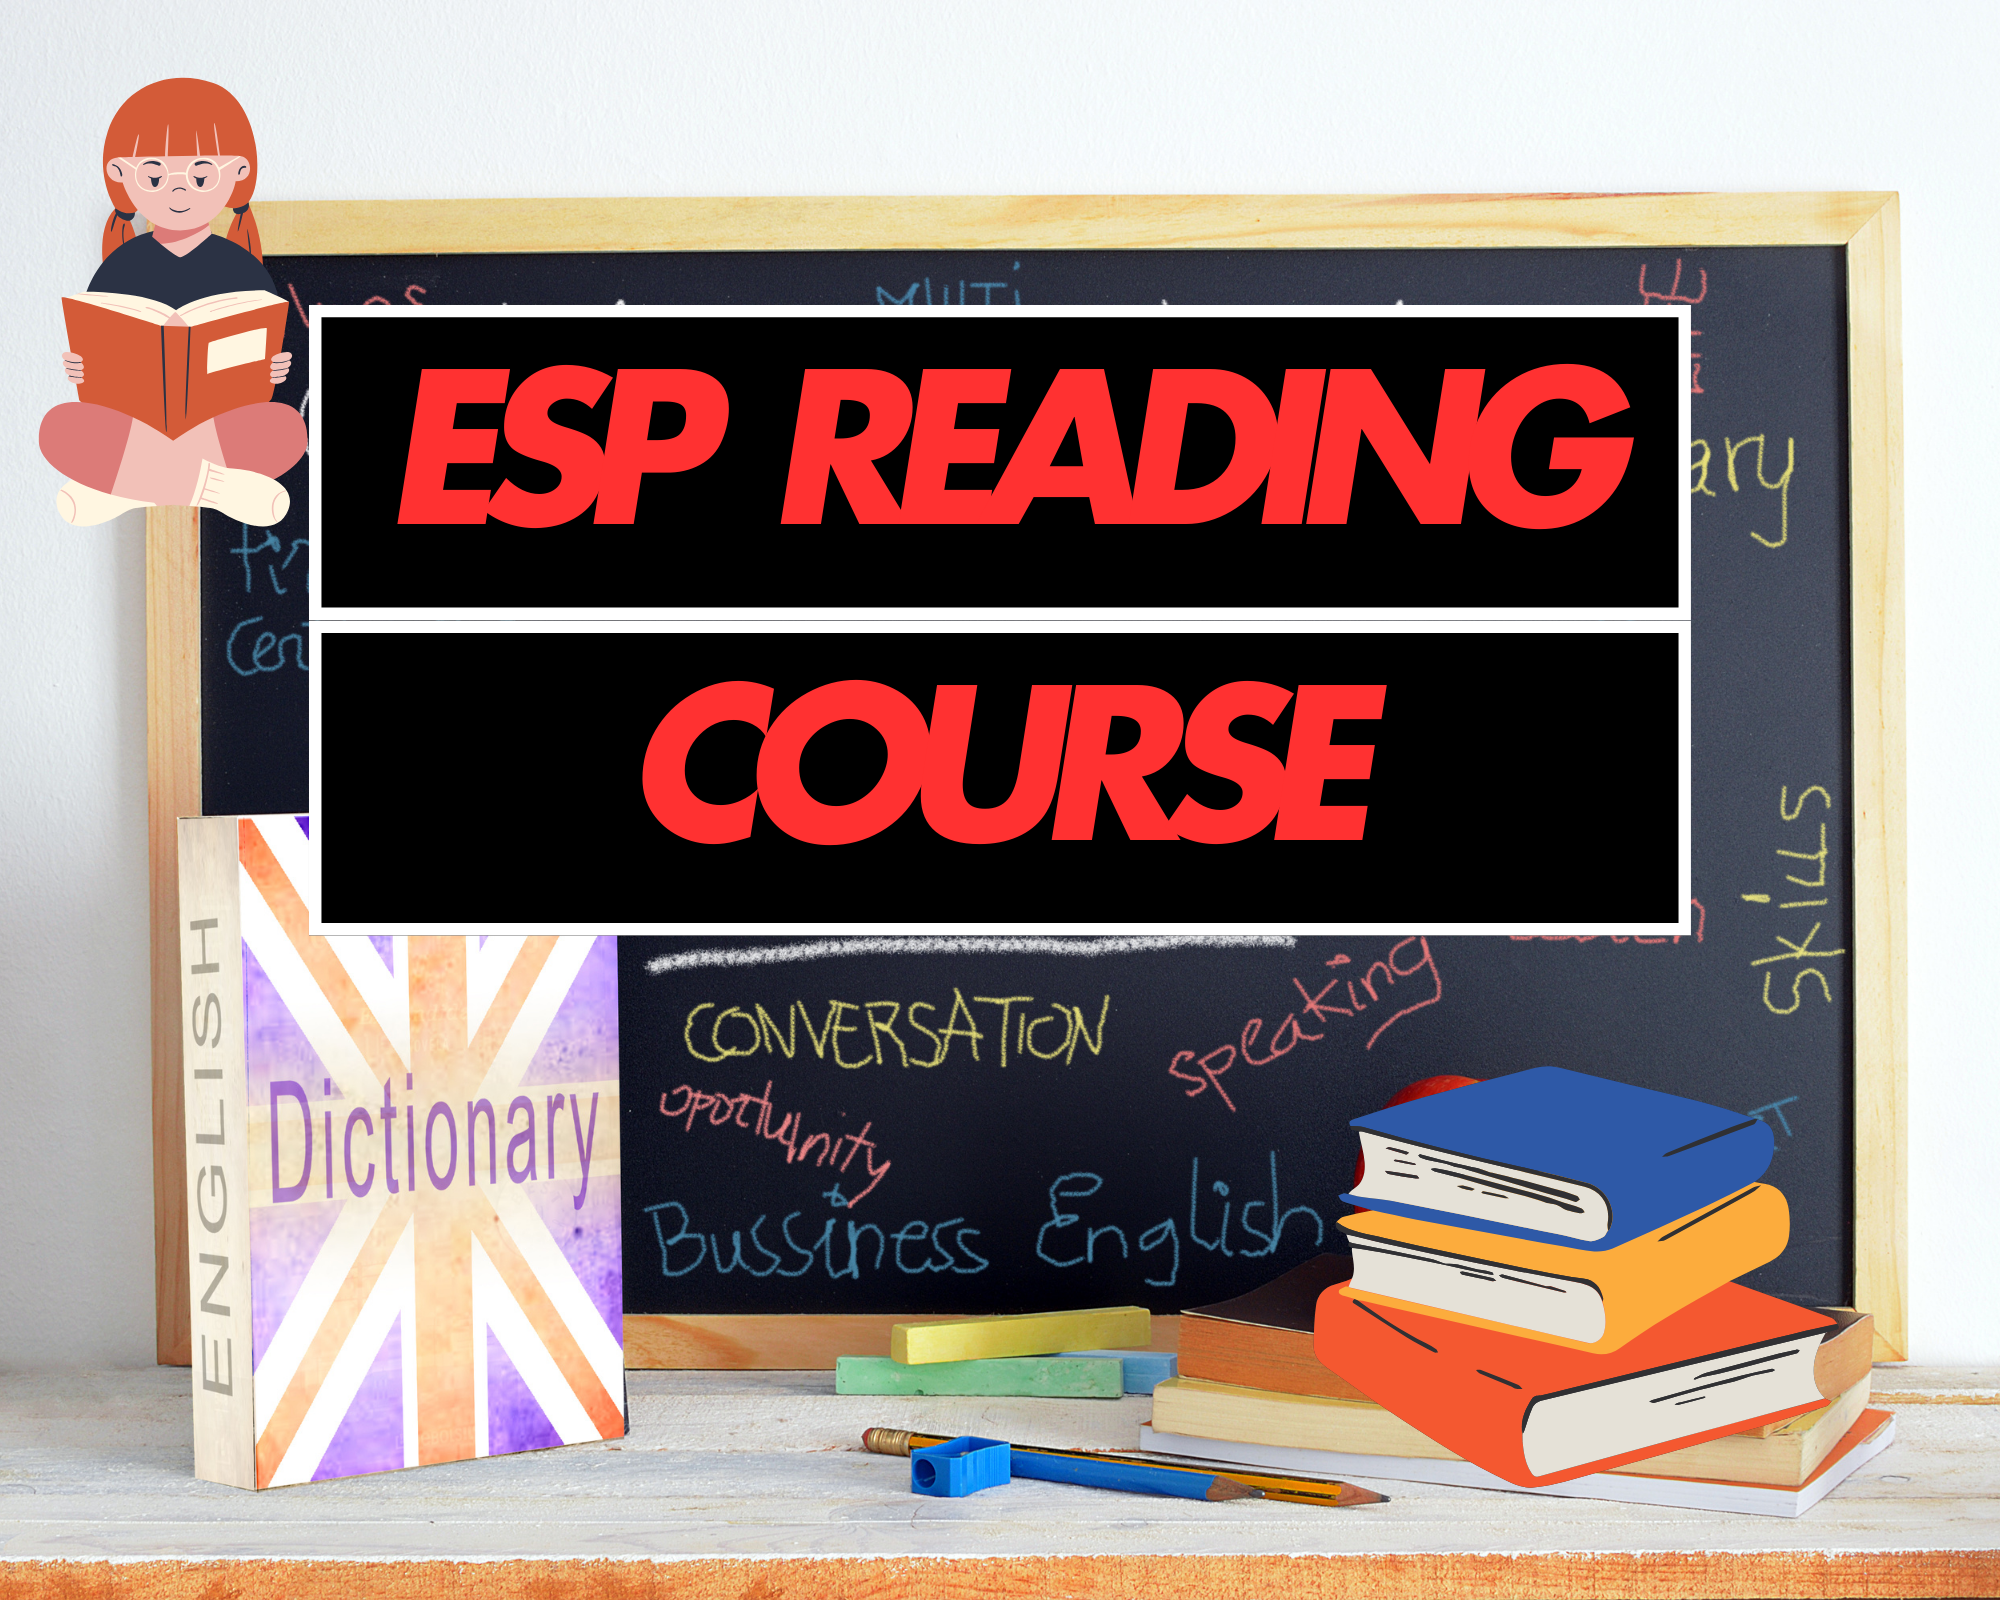 ESP Reading Course